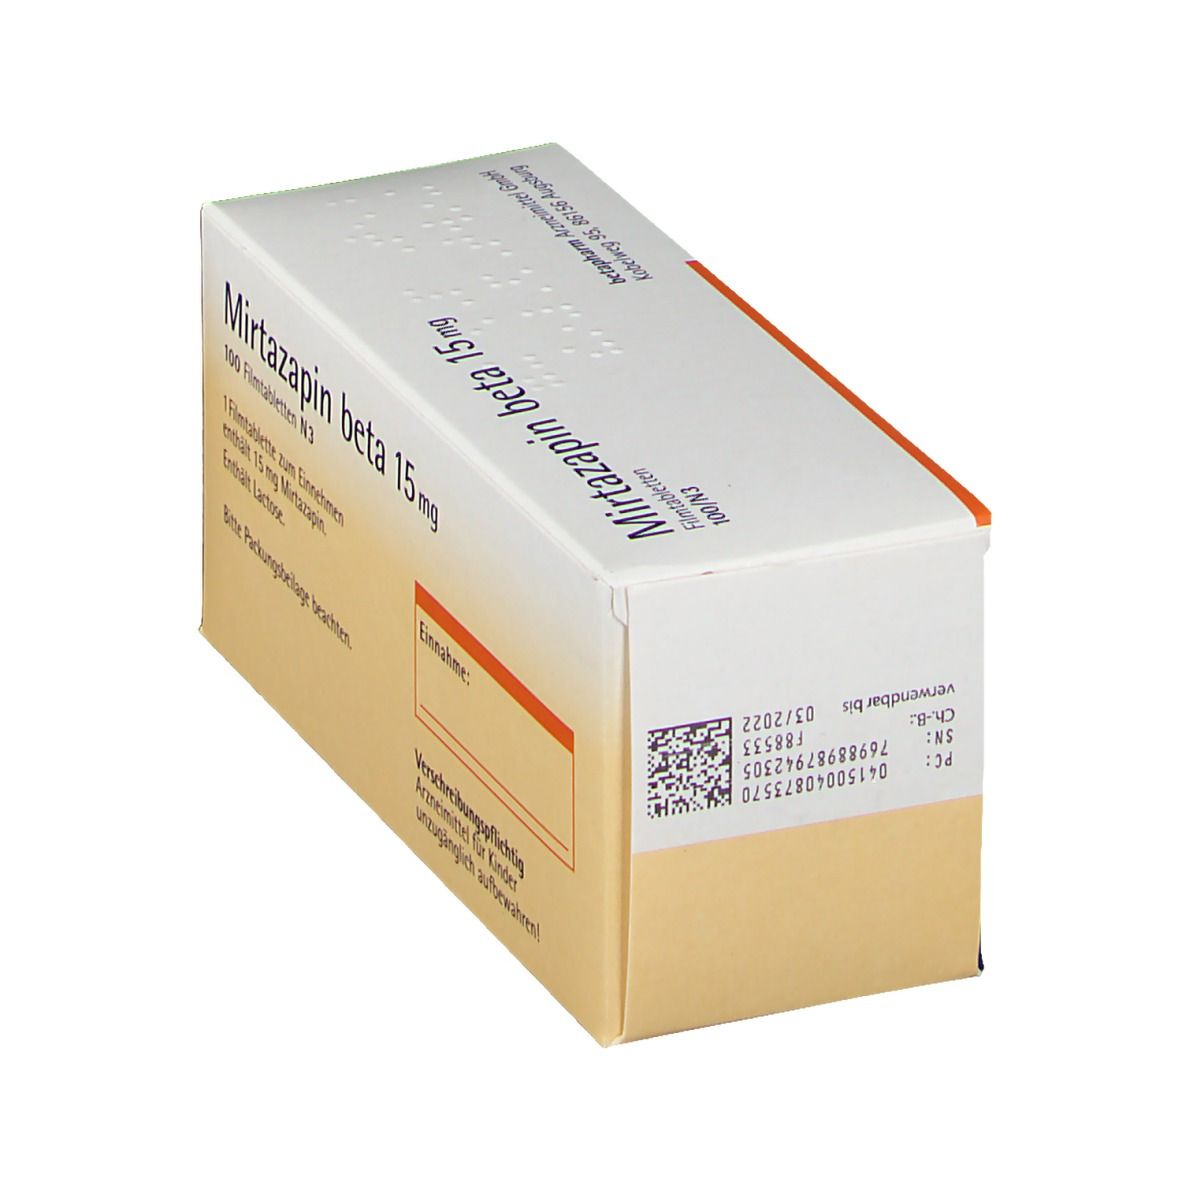 Mirtazapin beta 15 mg